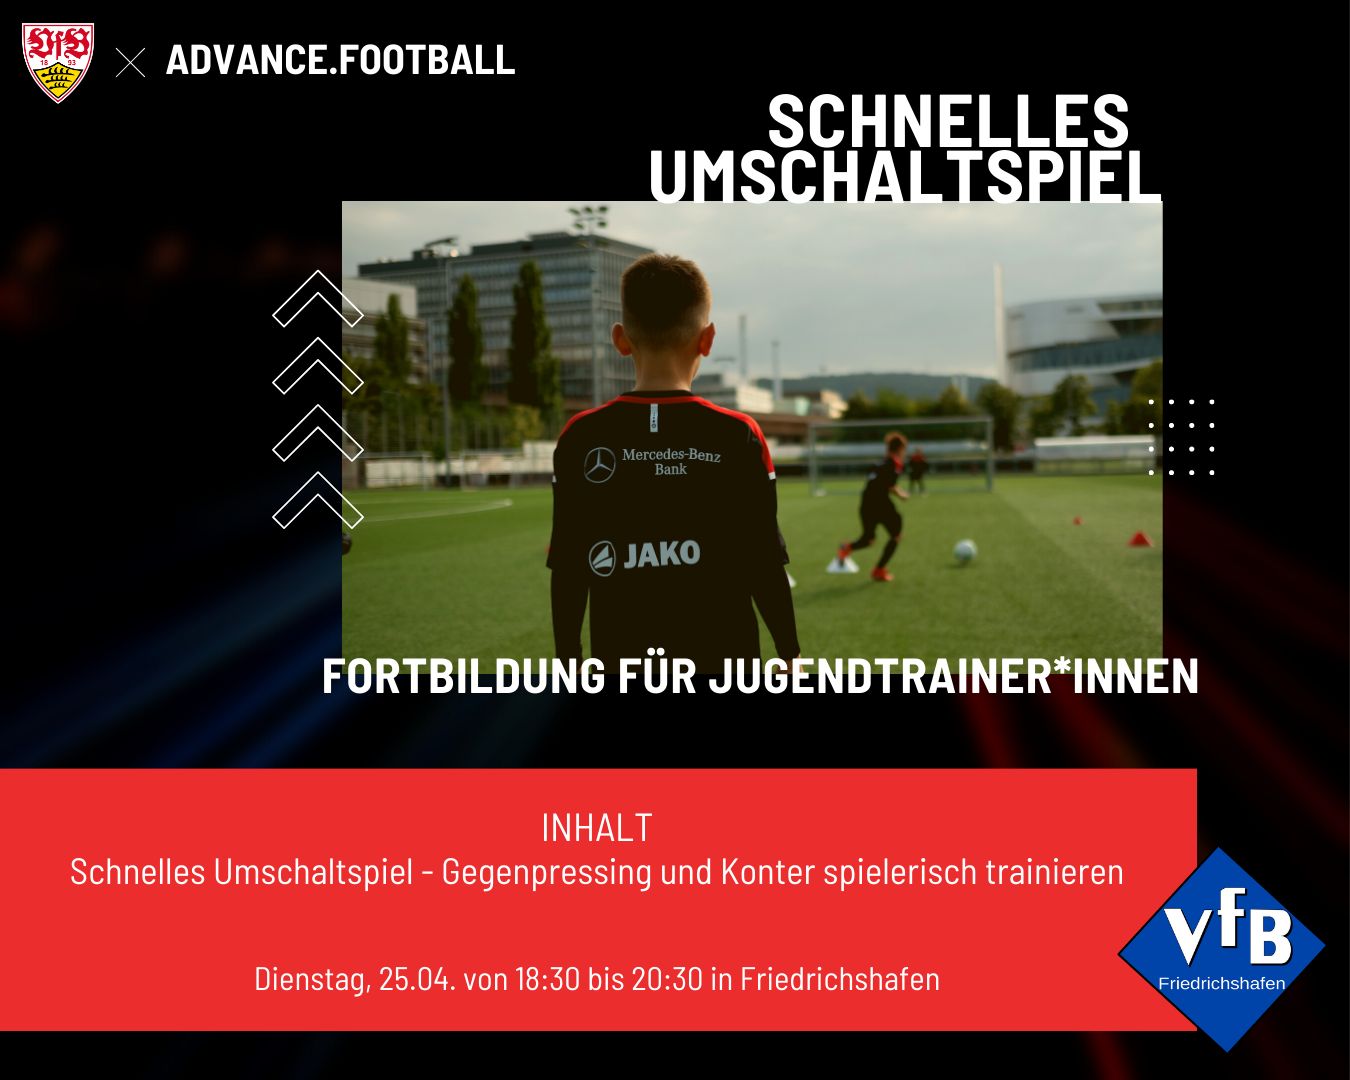 VfB Friedrichshafen Fußball Fortbildung für Jugendtrainer